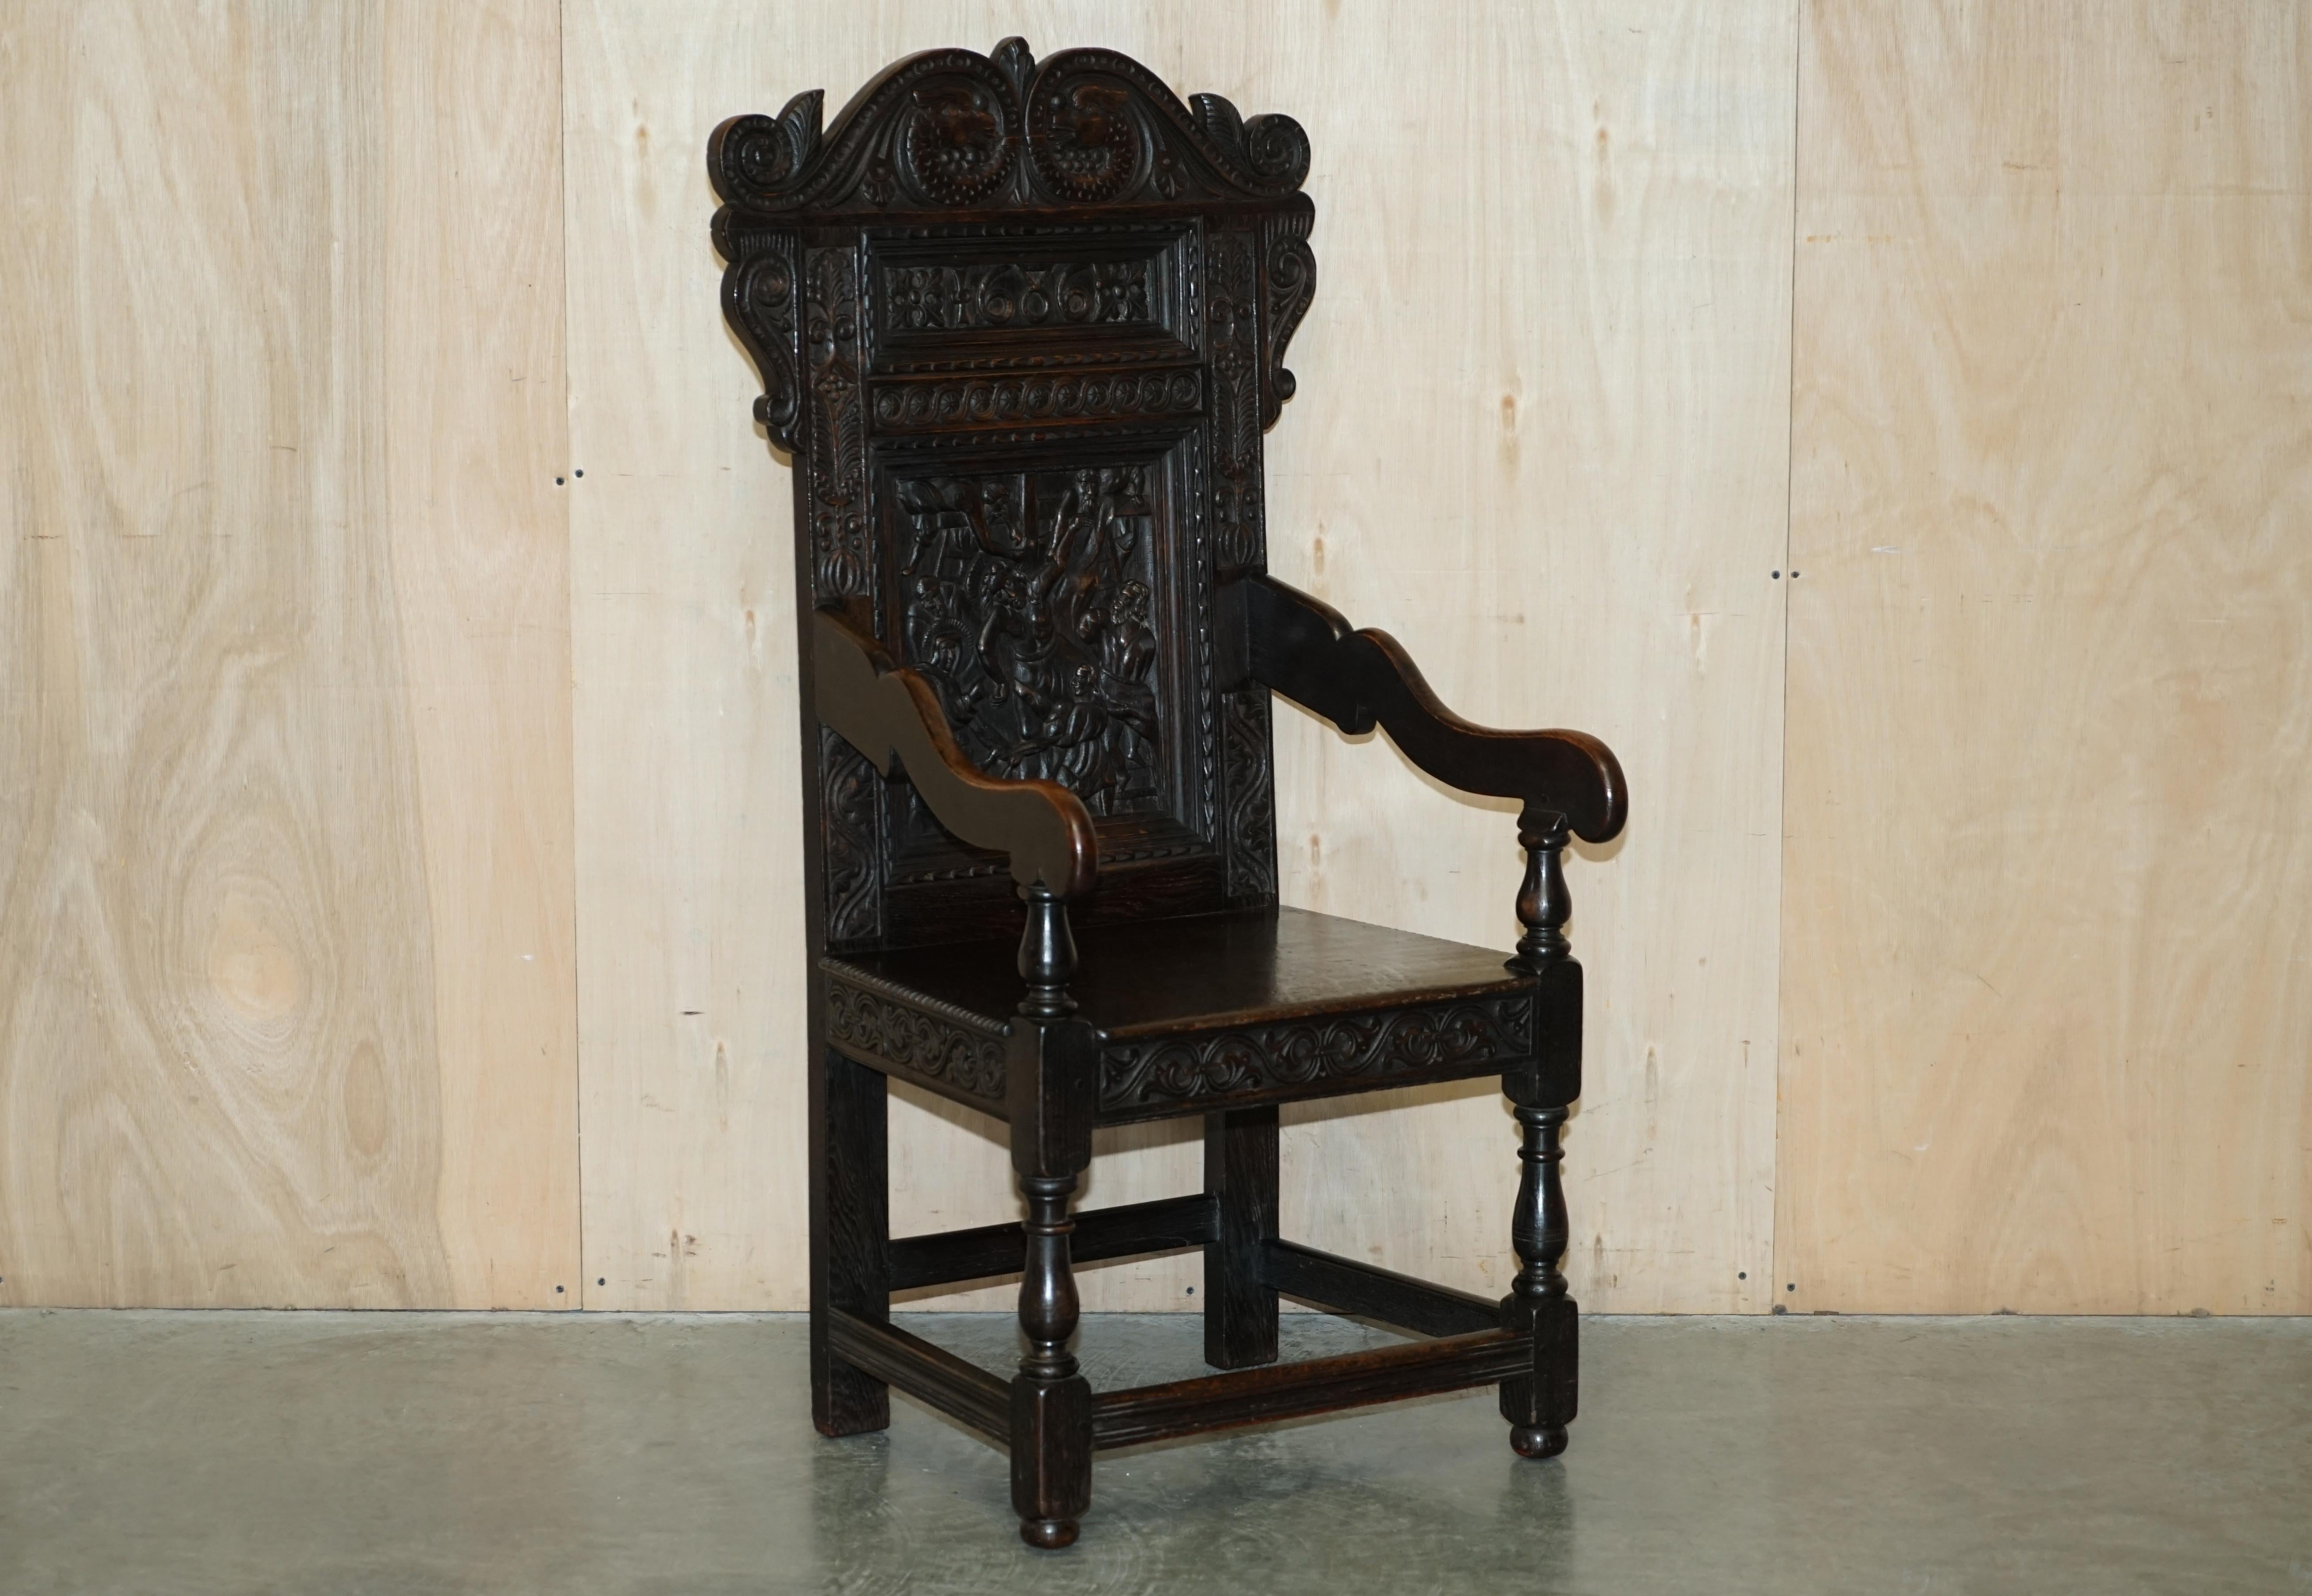 Nous sommes ravis d'offrir à la vente ce fauteuil Wainscot exceptionnellement rare, daté de 1686, sculpté à la main dans du chêne massif du nord de l'Angleterre.

La pièce est datée du début de l'année 1686, mais elle me semble plus proche de la